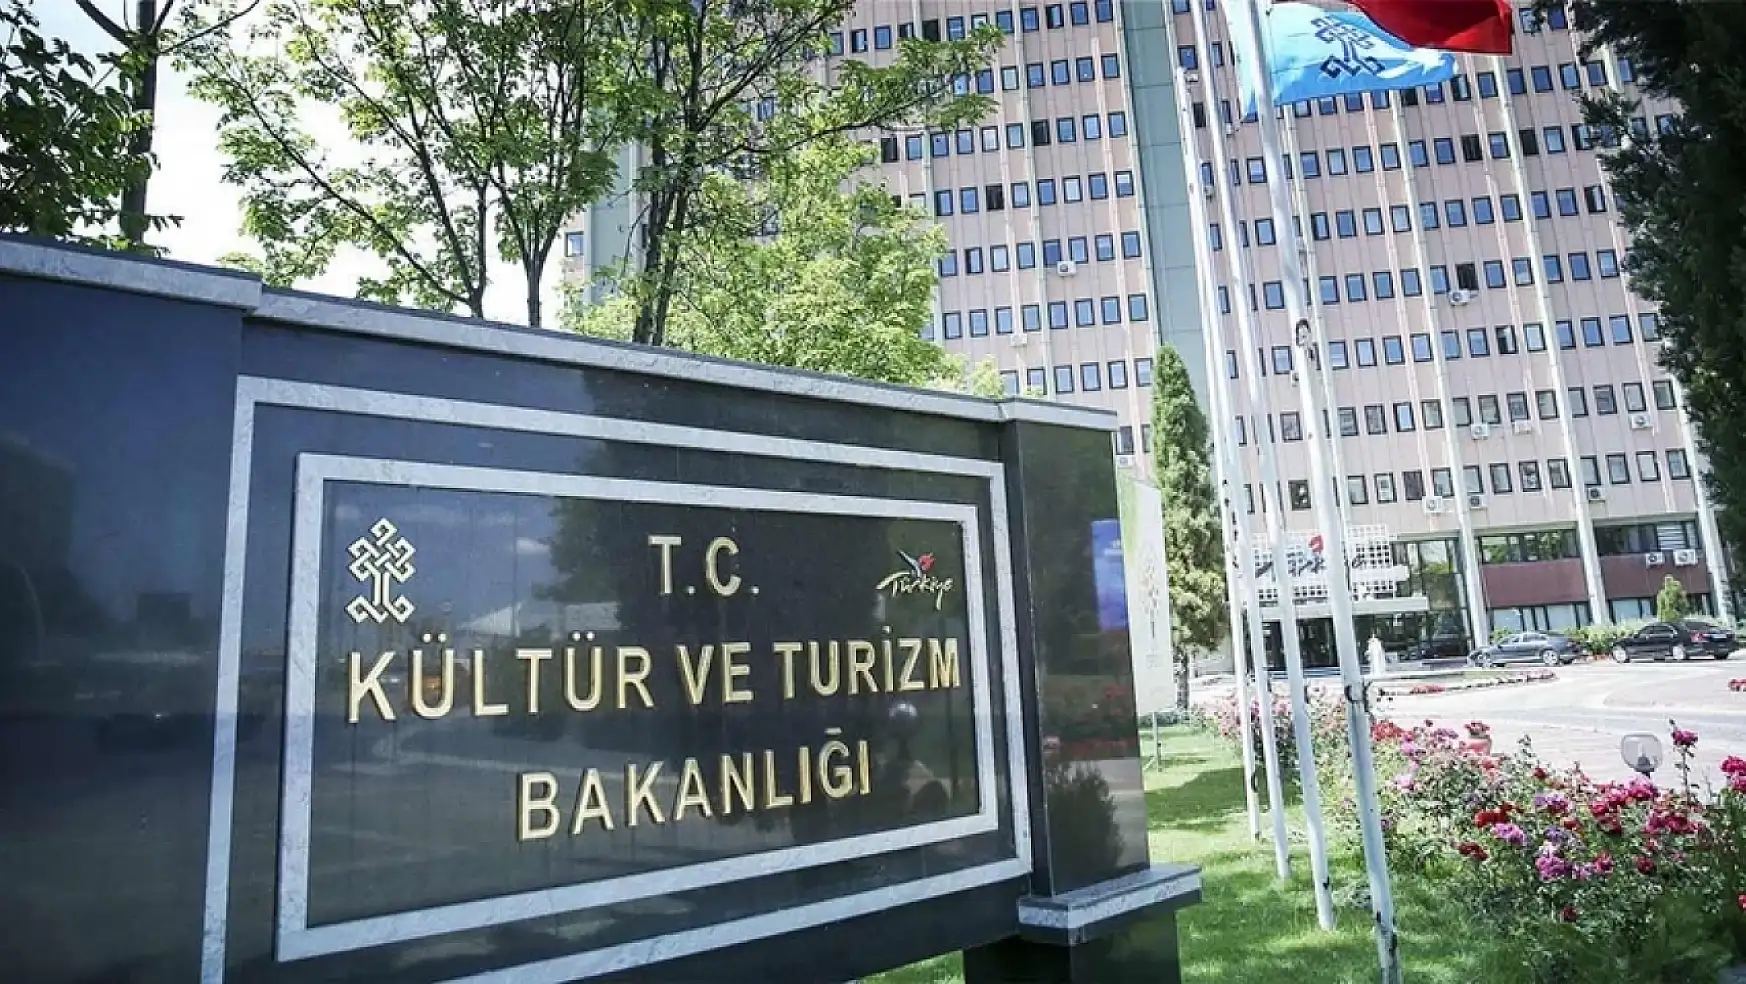 Kültür ve Turizm Bakanlığına bağlı etkinlikler durduruldu!